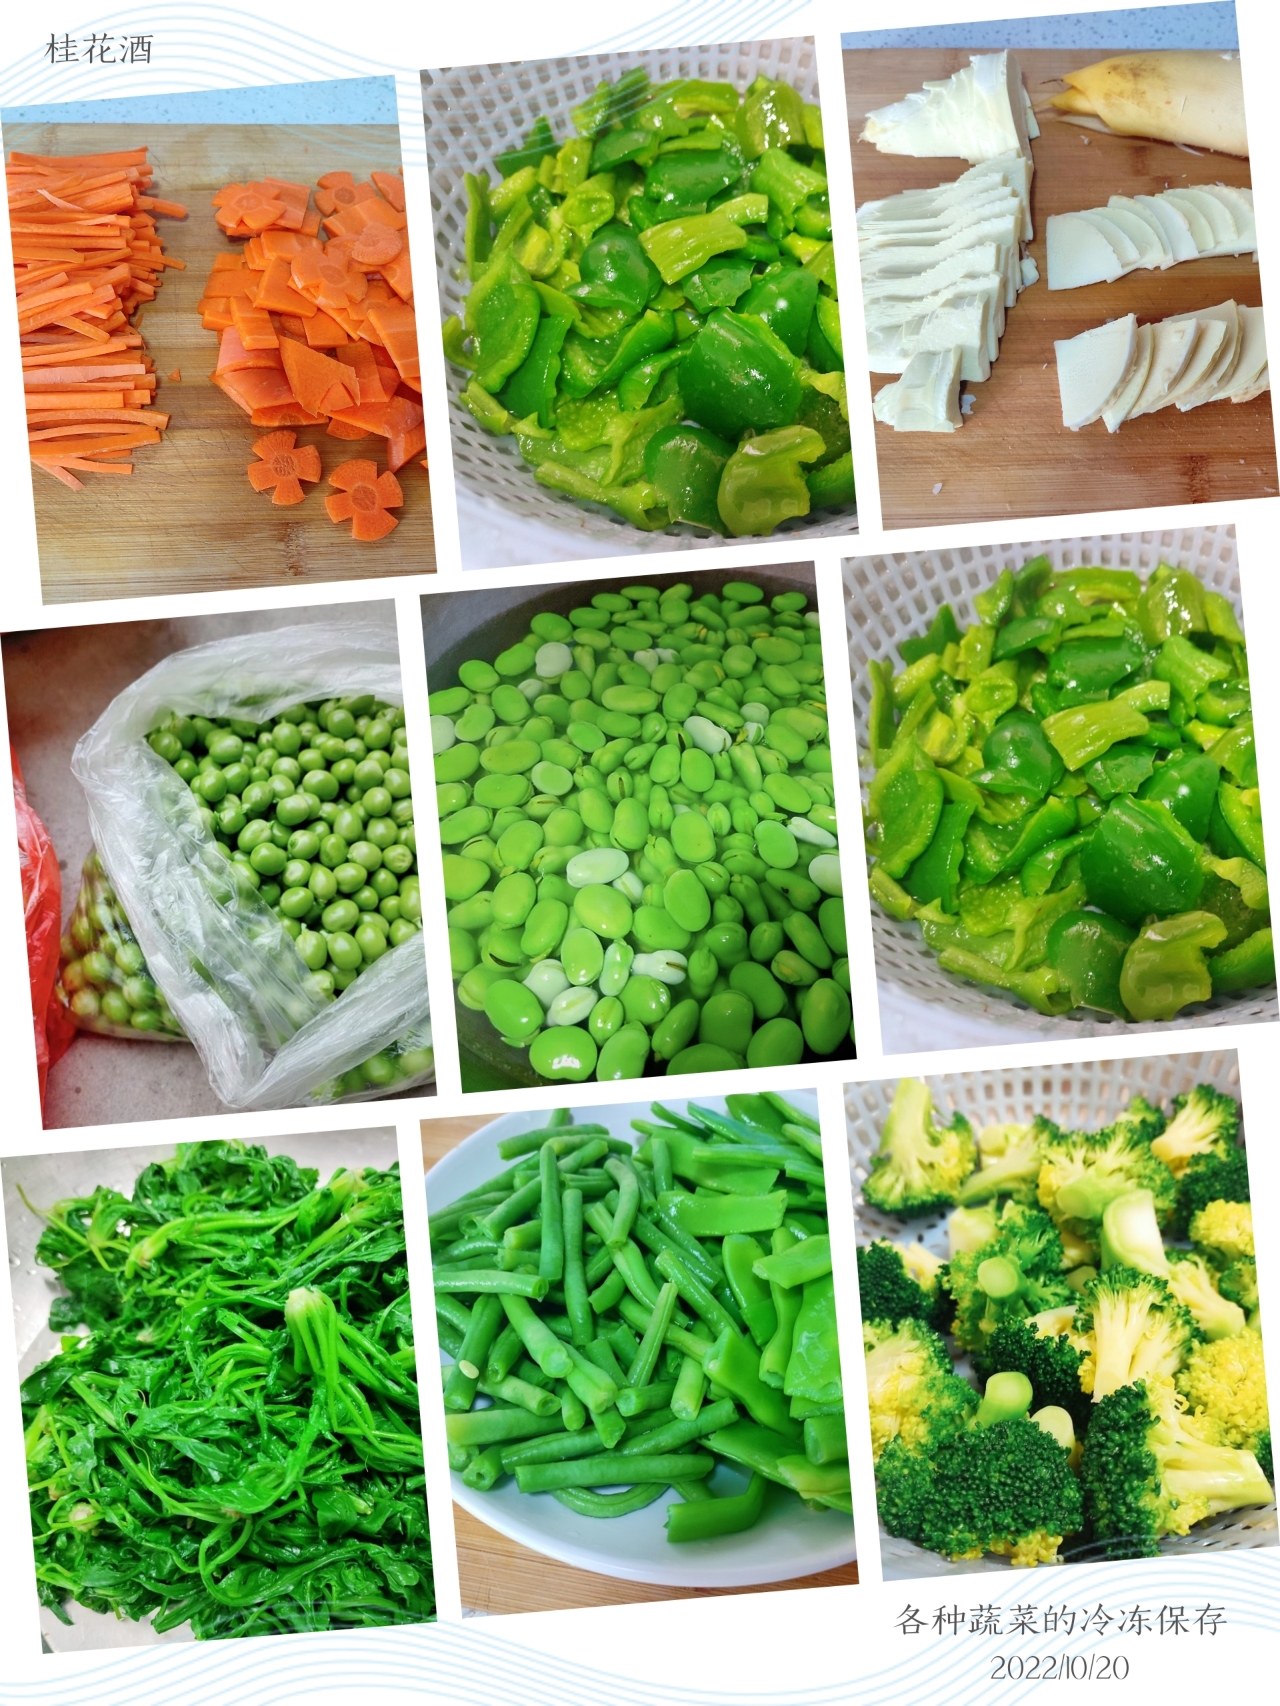 各种蔬菜的冷冻保存